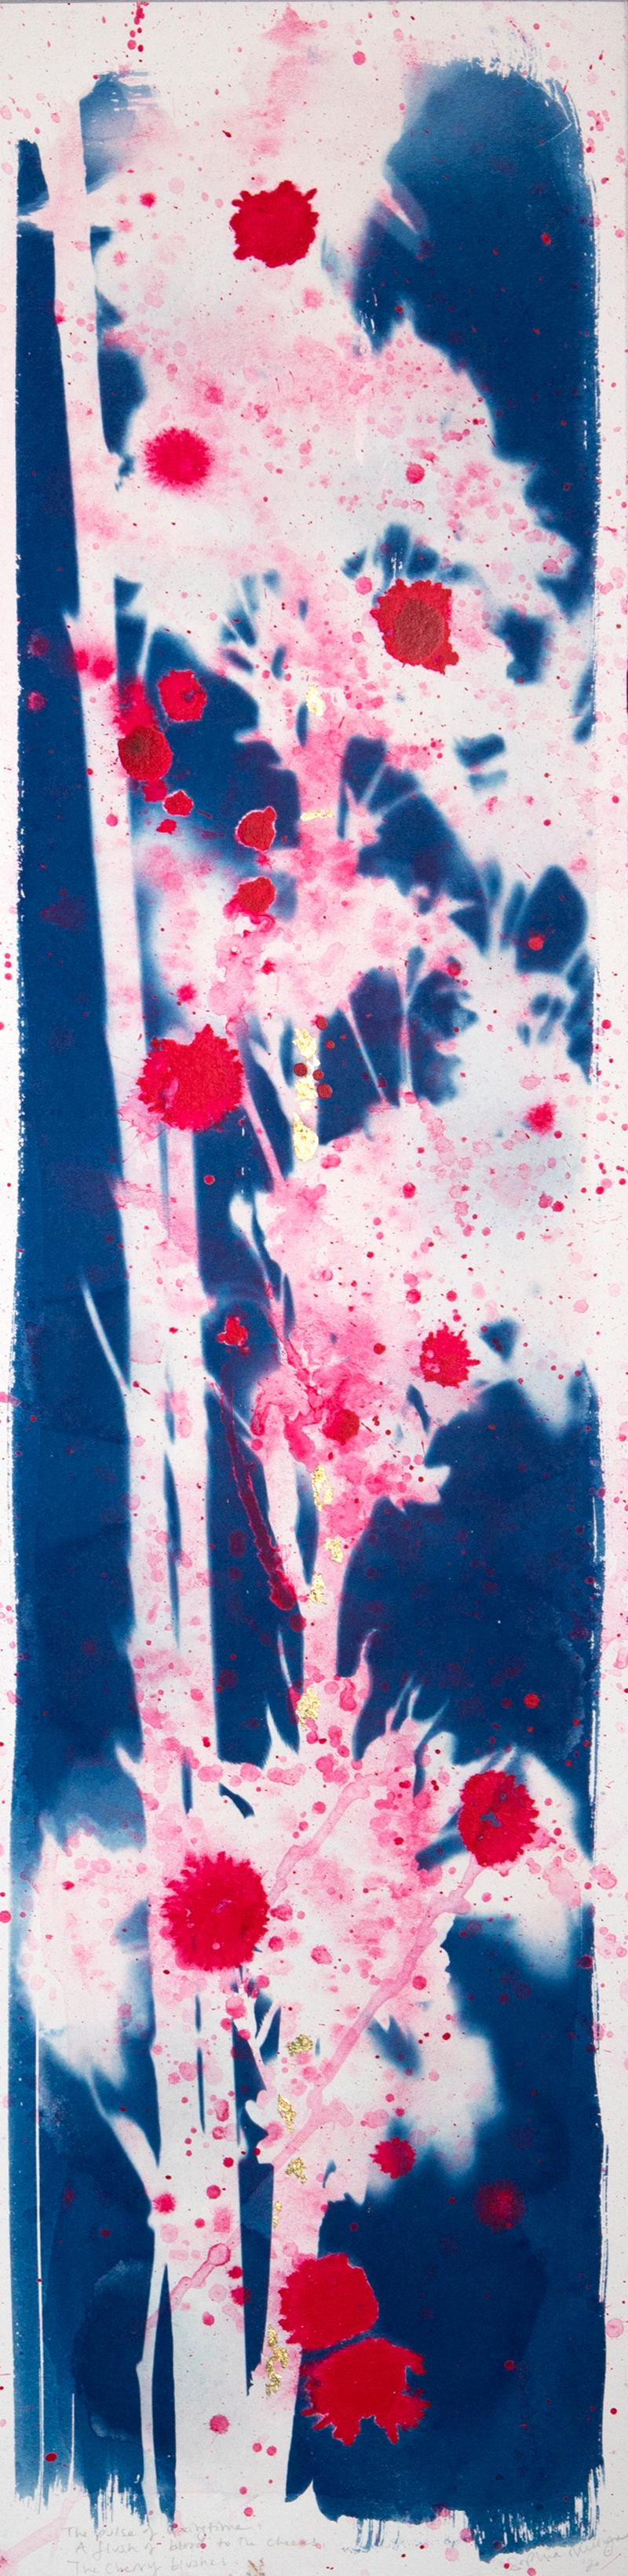 « The Cherry Blushes », sakura, fleur botanique abstraite bleu, blanc et rose